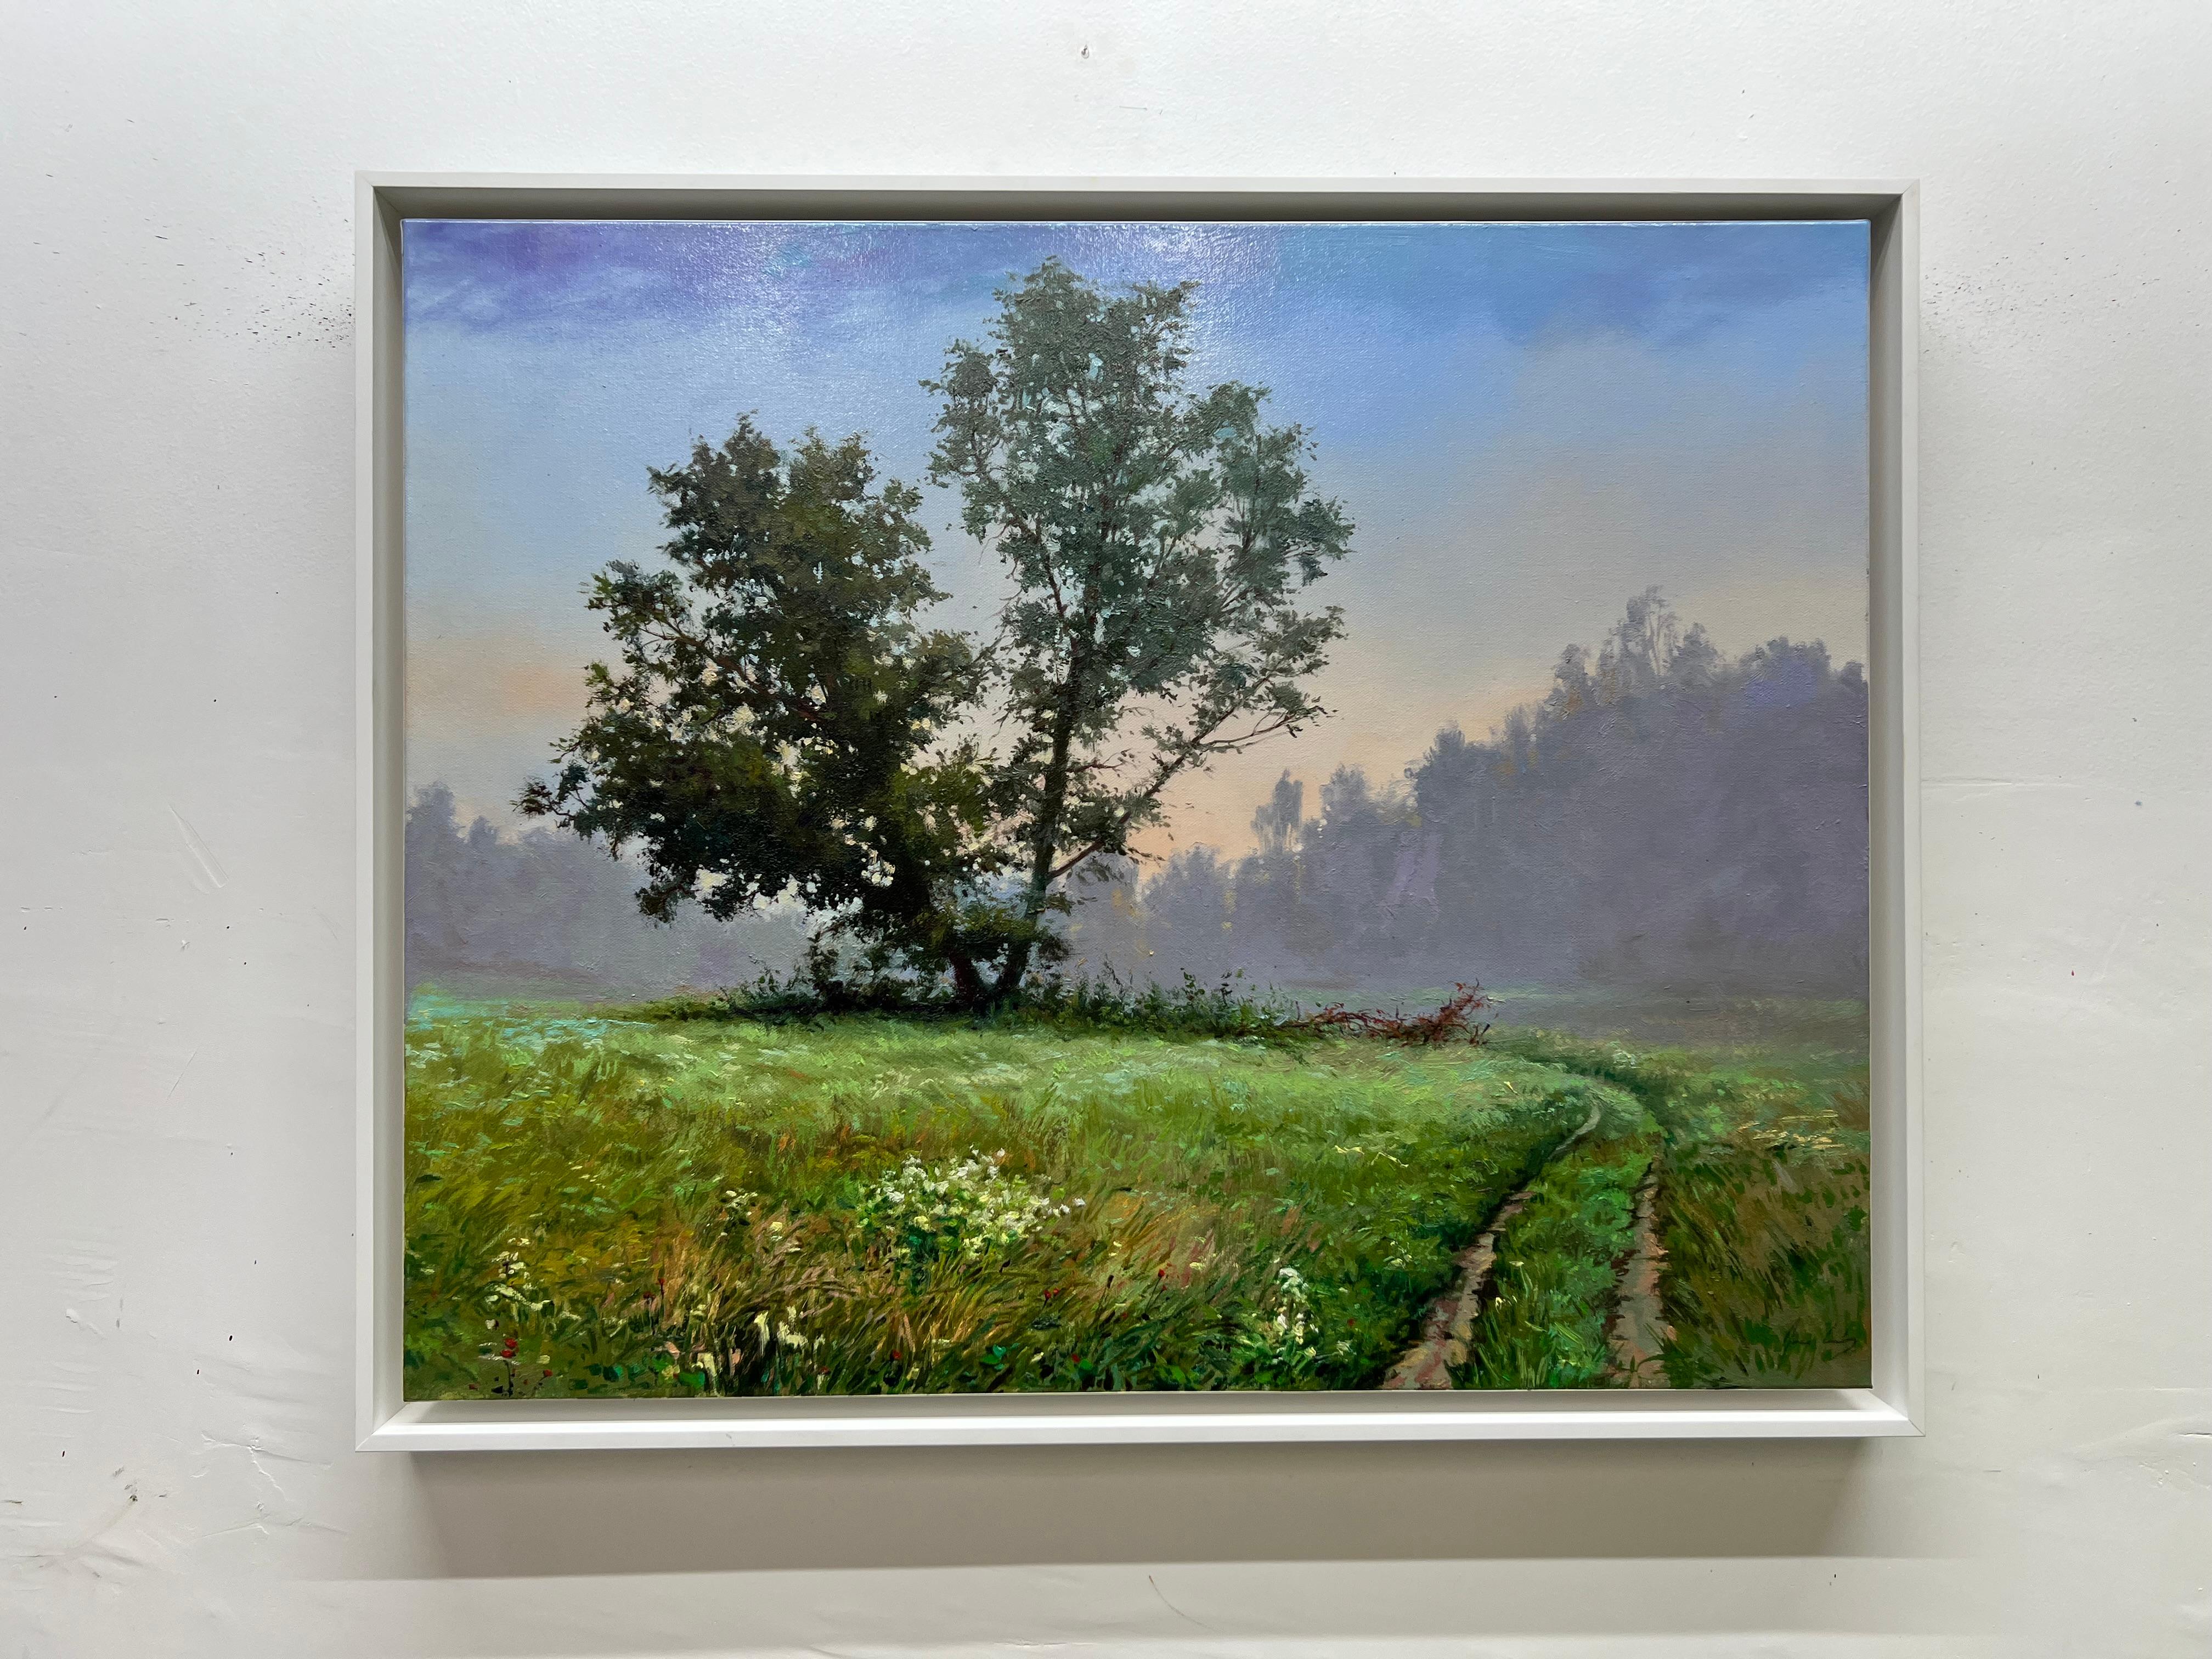 <p>Kommentare des Künstlers<br>Der Künstler Jose Luis Bermudez malt eine realistische Landschaft mit einem klaren Morgenhimmel über einem lebendigen Ökosystem von Pflanzen. Am Horizont warten die Bäume auf das warme Sonnenlicht, während sie langsam